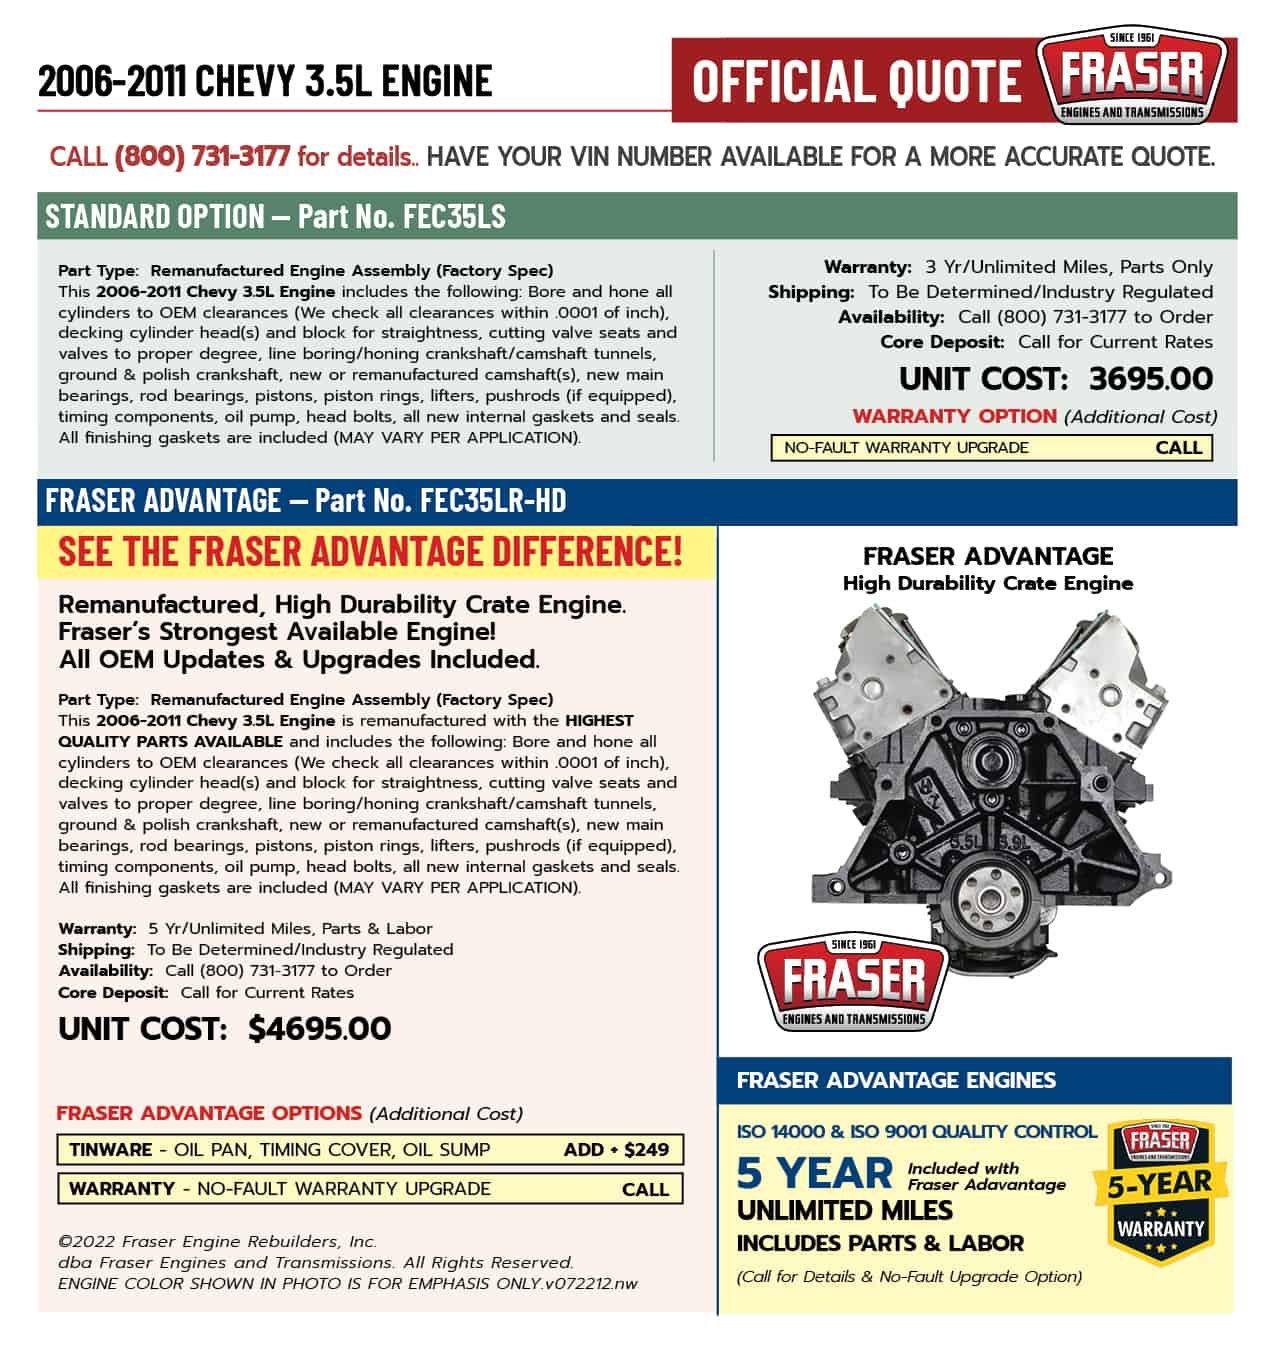 2006-2011 Chevrolet 3.5 Liter Engine